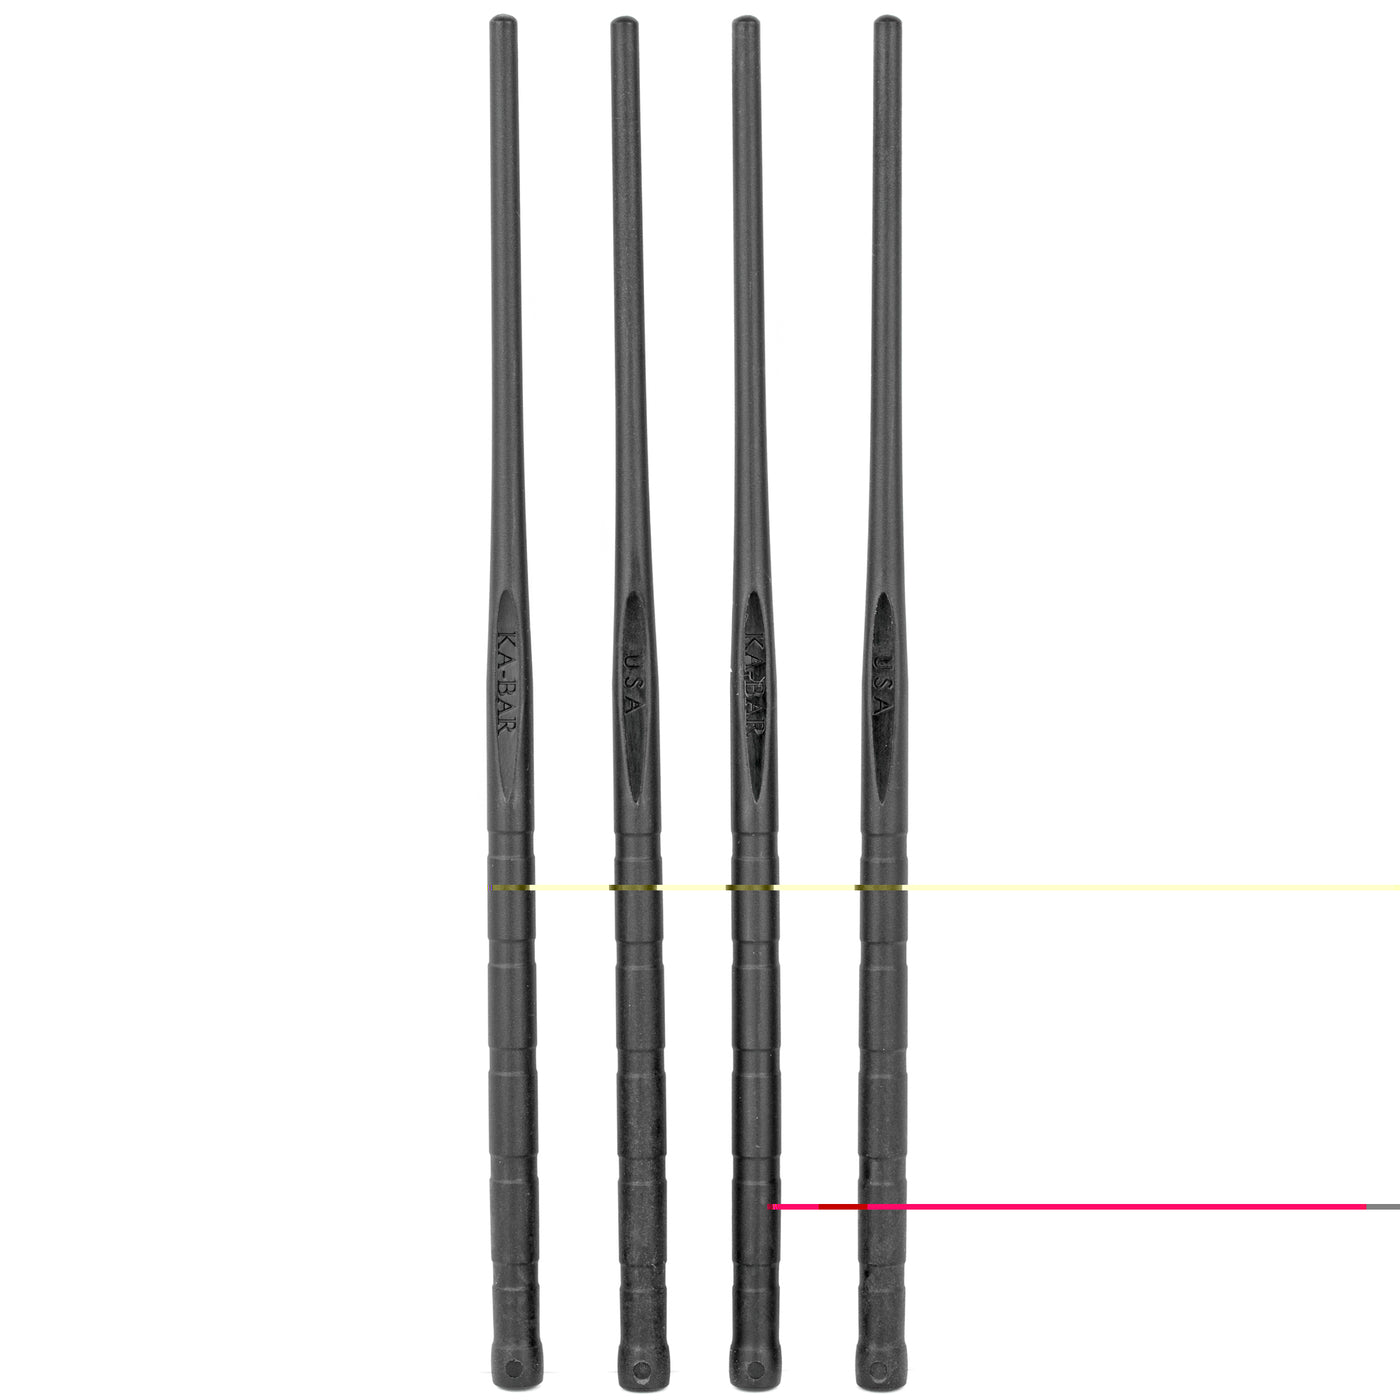 Kbar Ka-bar Chopsticks 9.5" Blk 2set